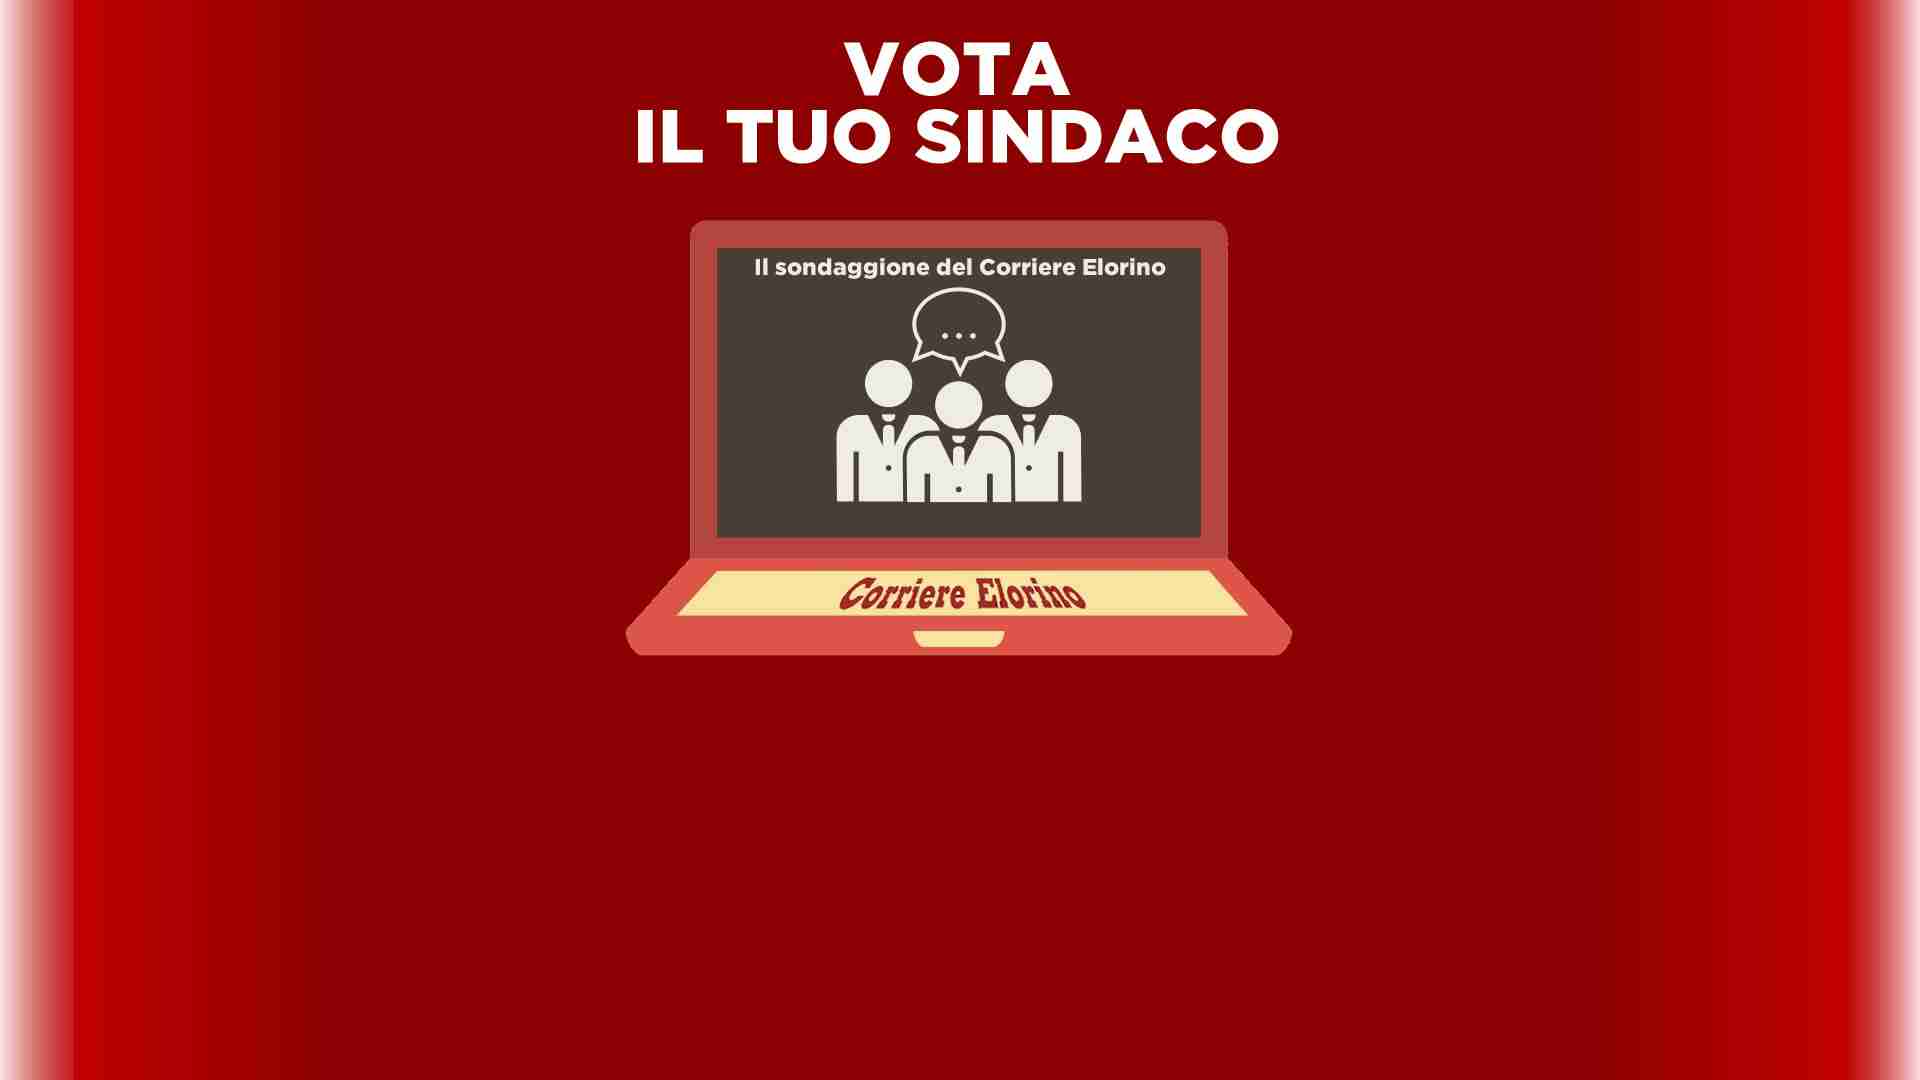 Vota il tuo SINDACO, sondaggio online del Corriere